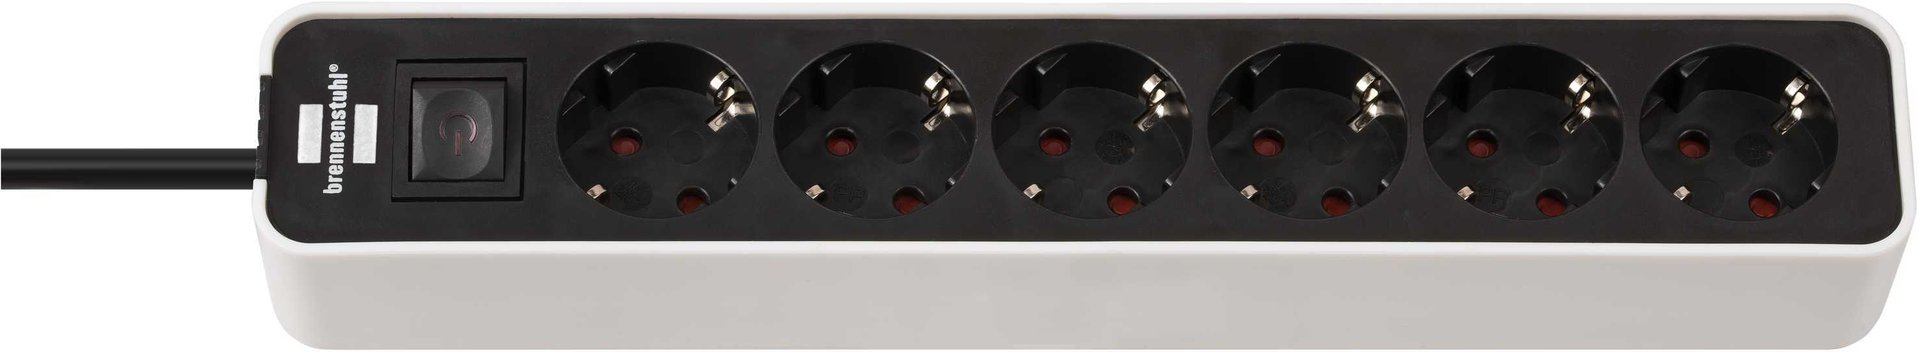 Brennenstuhl Ecolor Steckdosenleiste 6-fach (Steckerleiste mit Schalter und 1,5m Kabel) schwarz/weiß